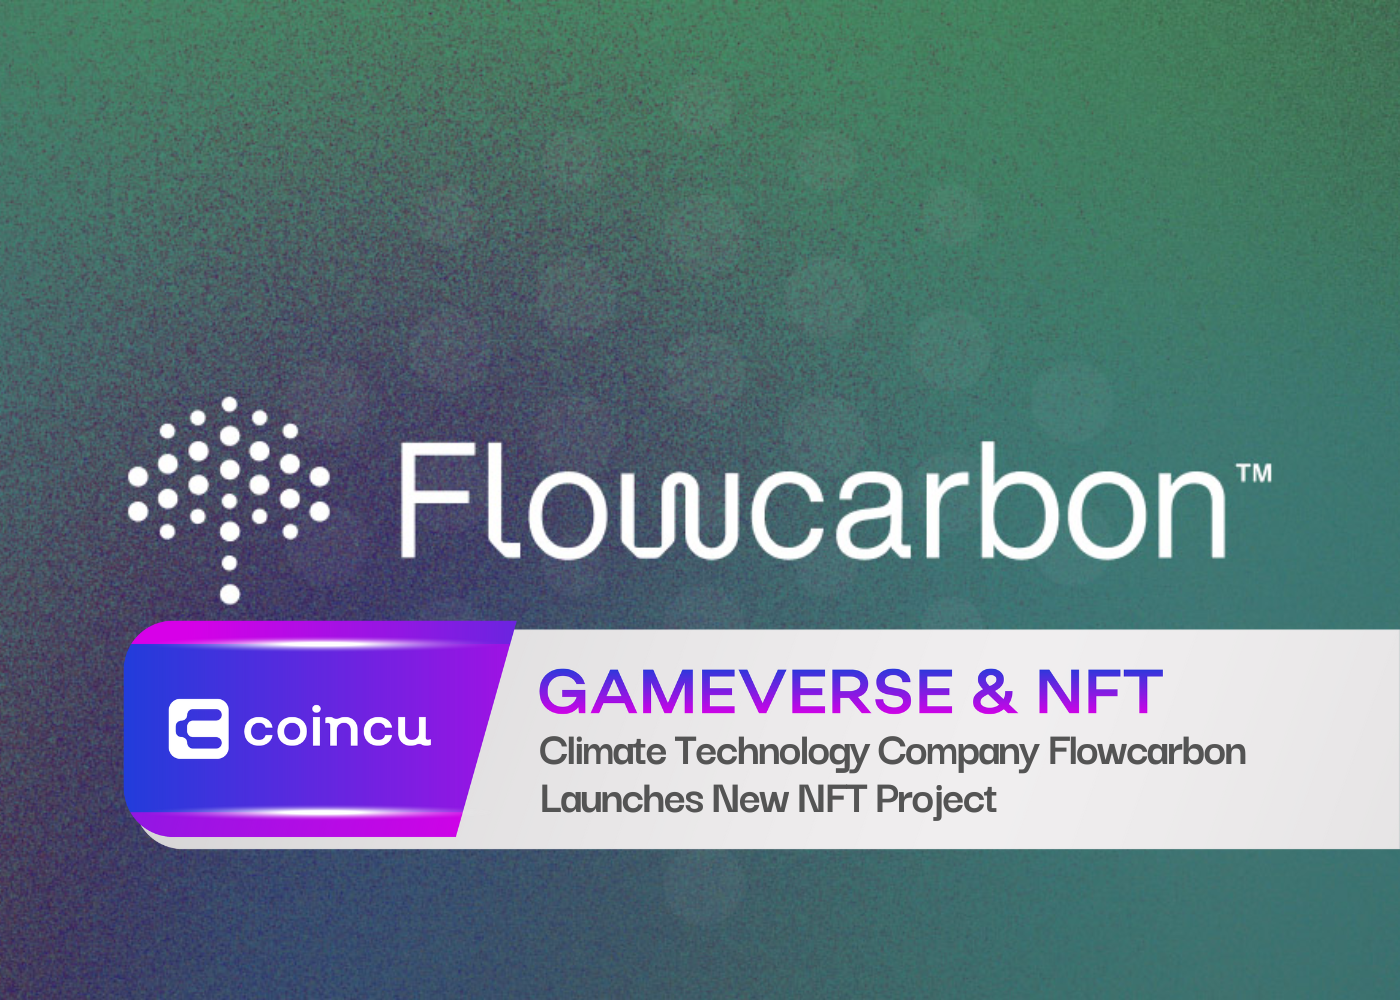 Das Klimatechnologieunternehmen Flowcarbon startet neues NFT-Projekt